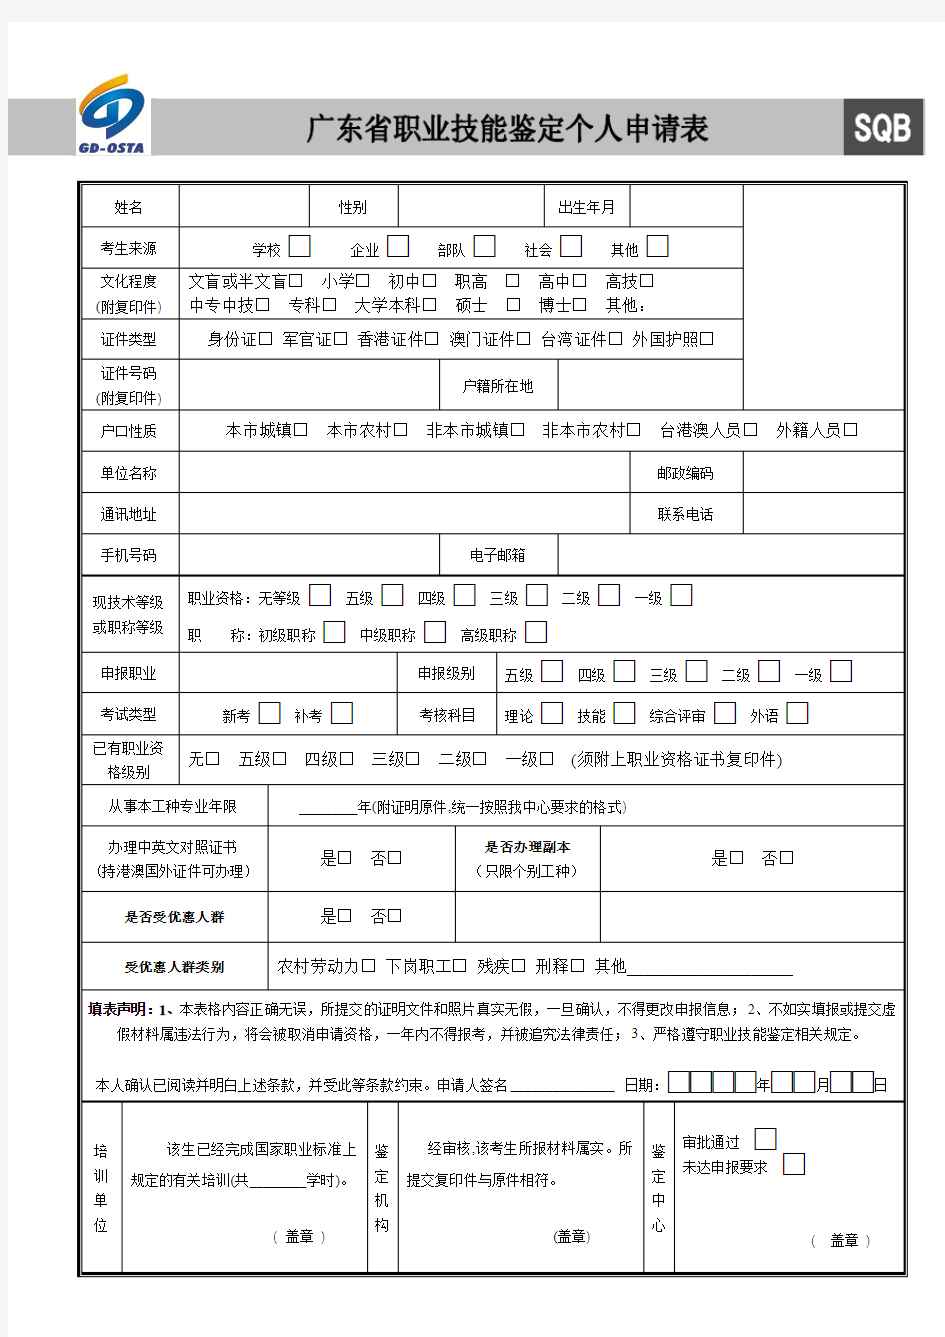 广东省职业技能鉴定个人申请表(新)